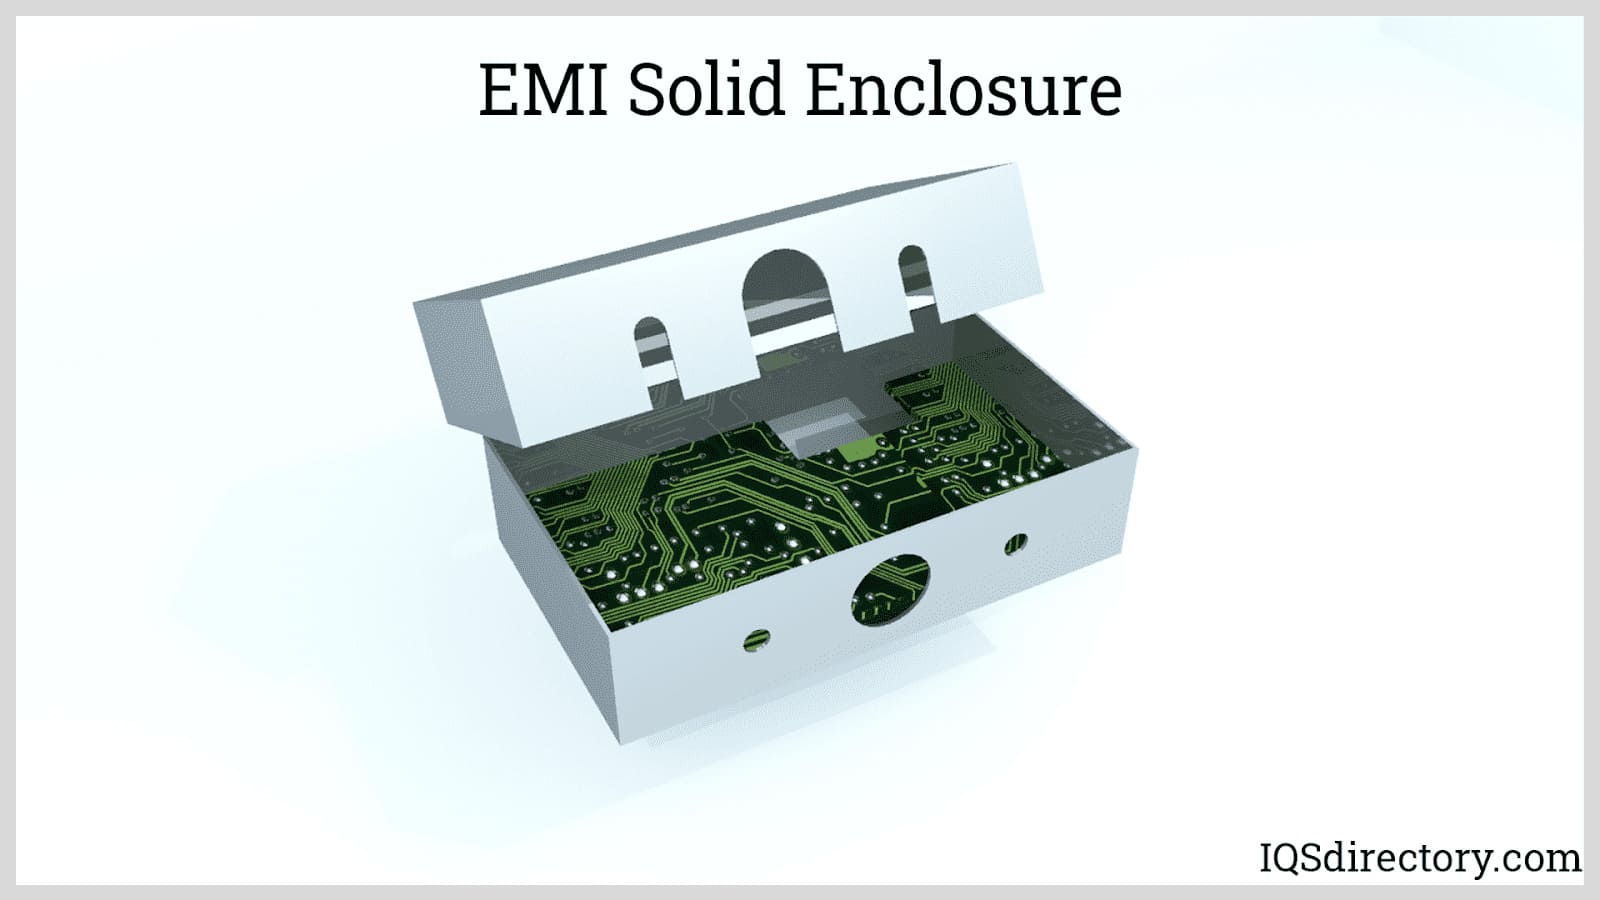 EMI Solid Enclosure